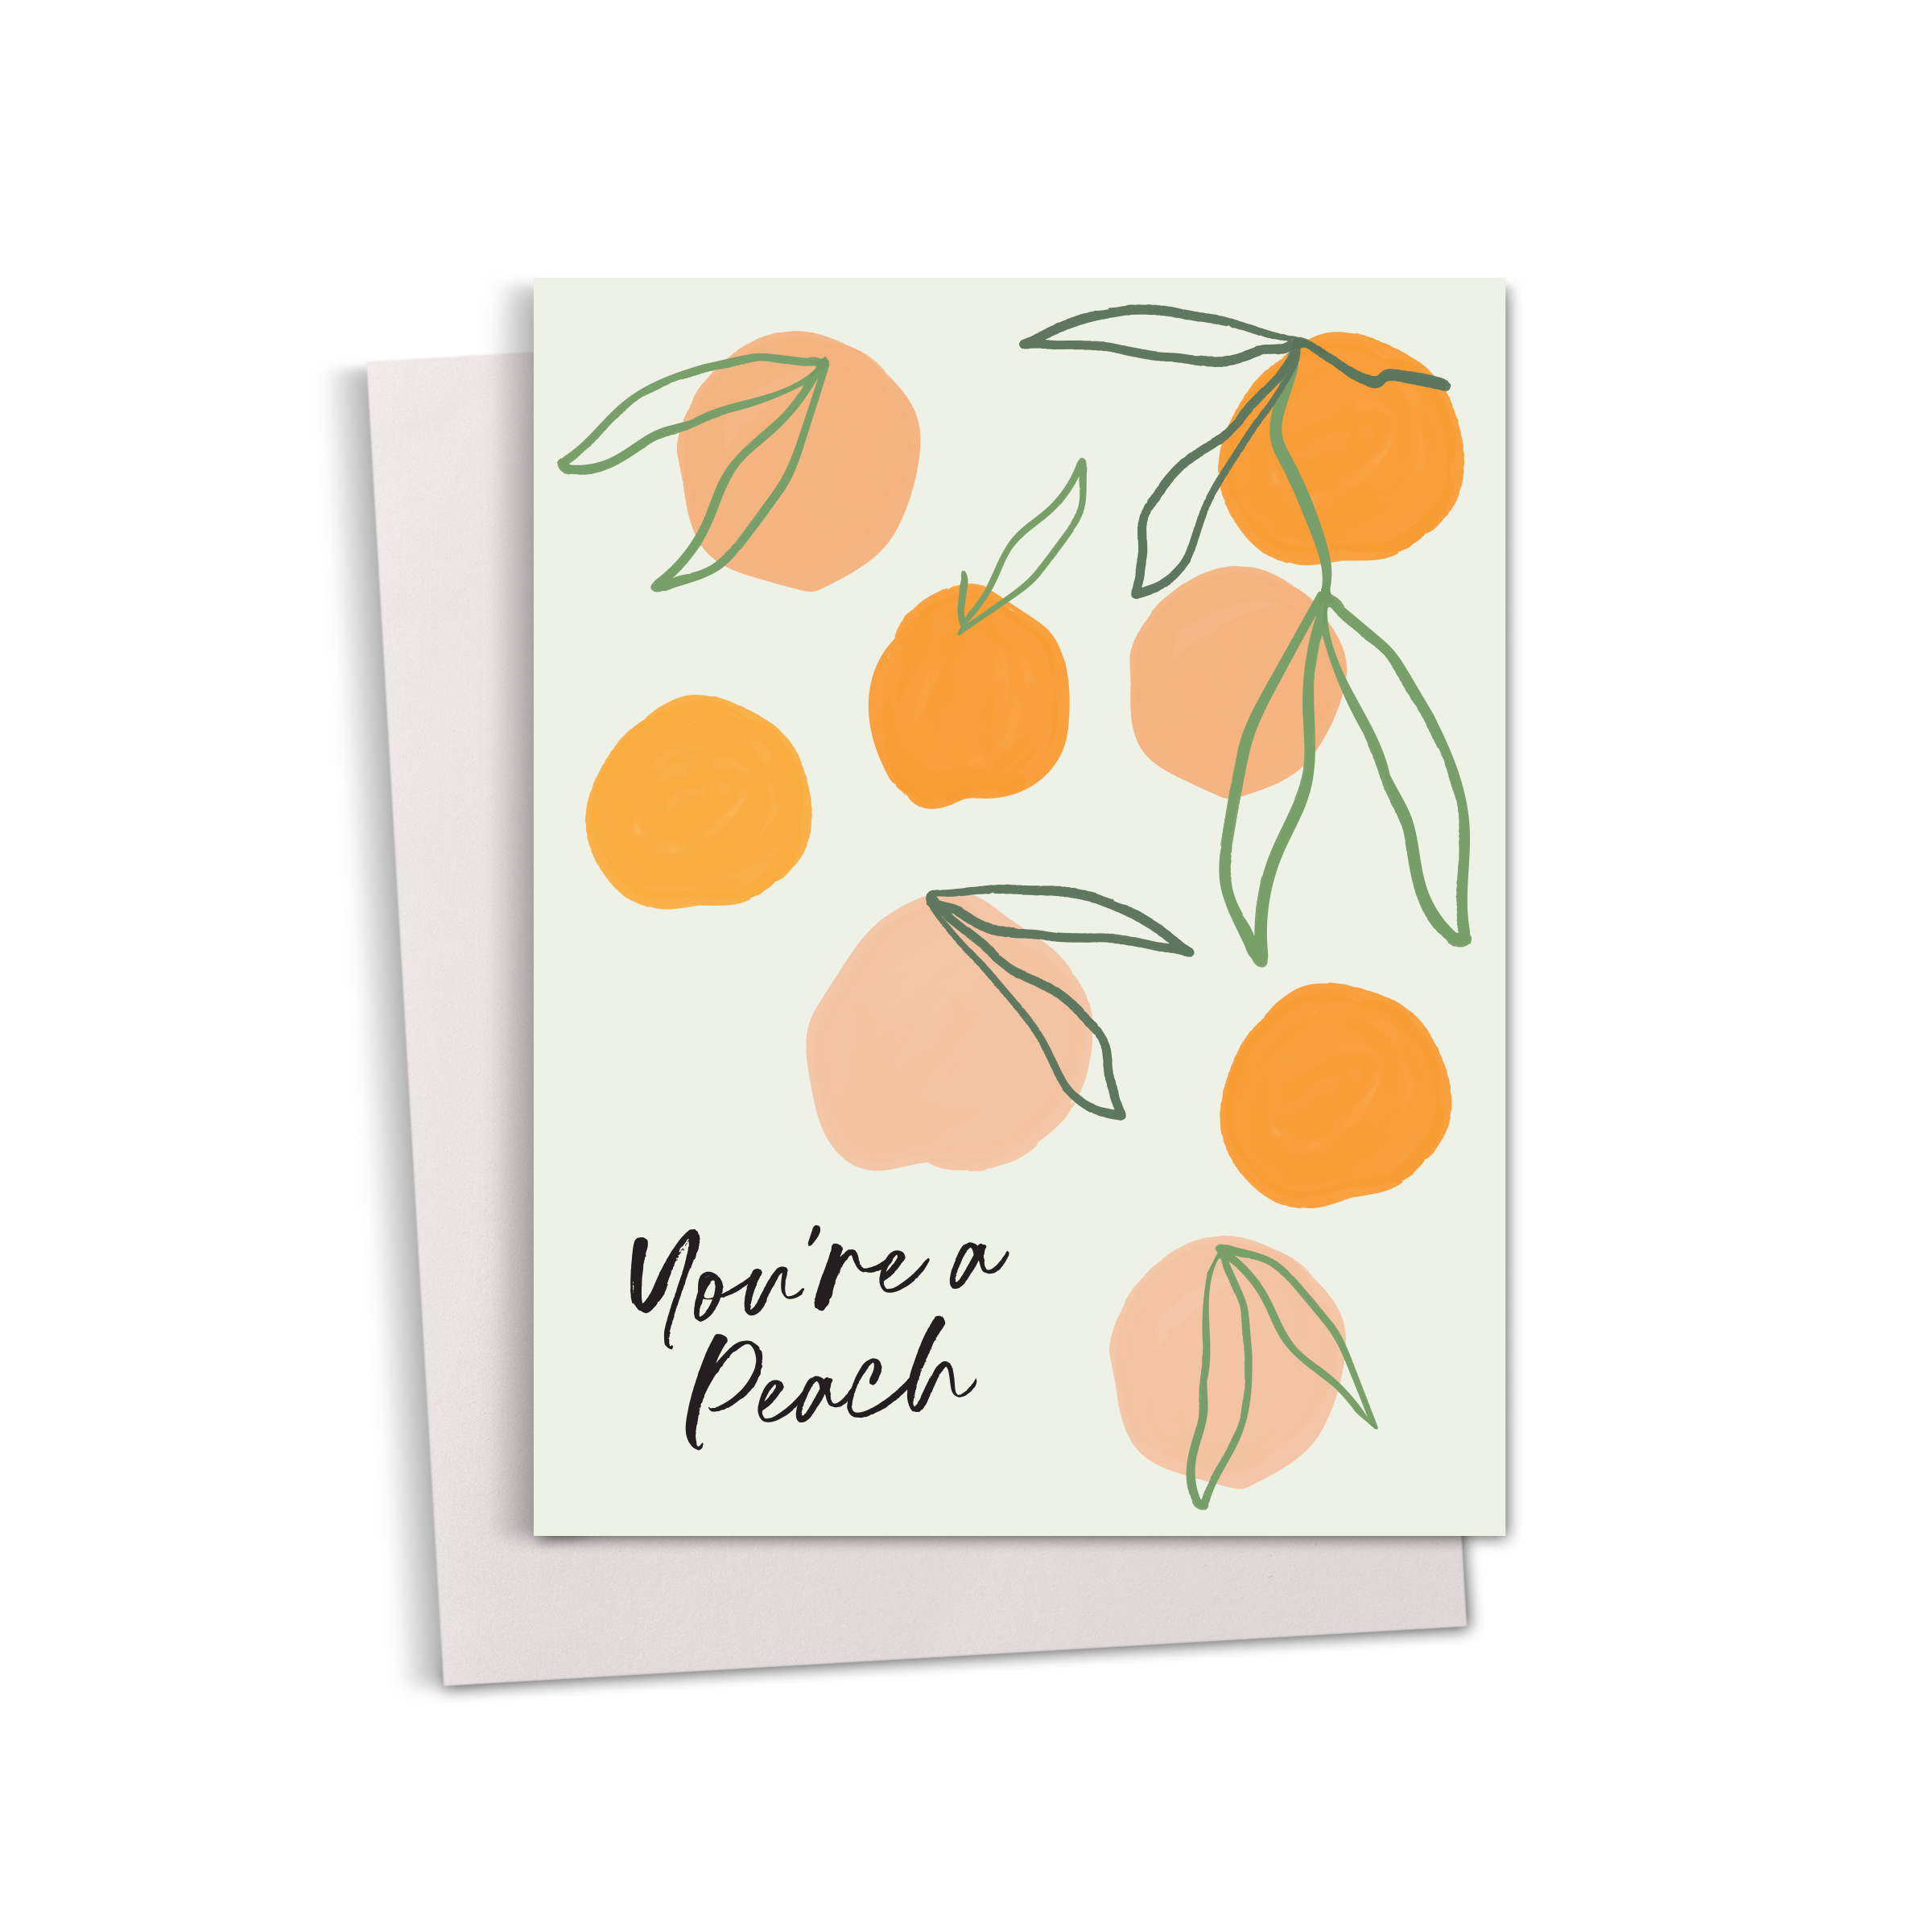 You're A Peach Greeting Card